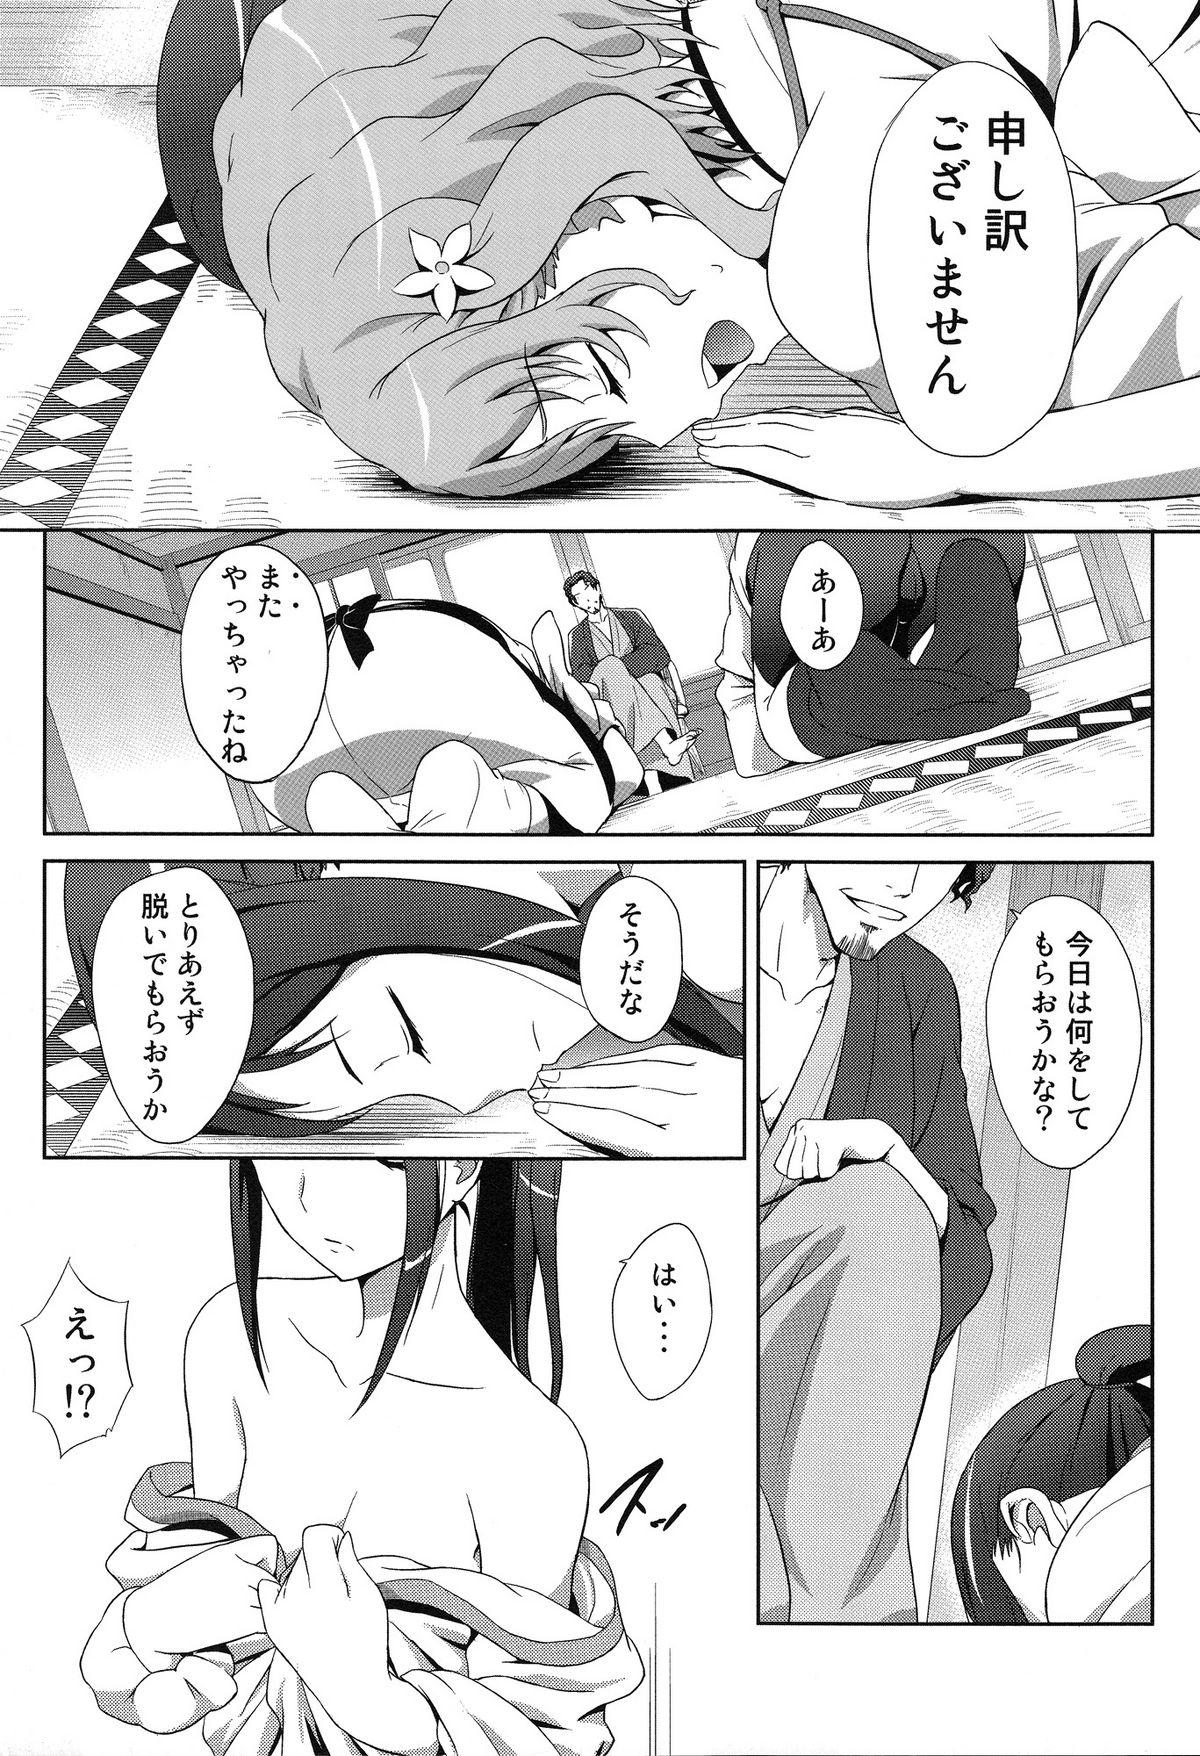 Rubbing Ano Hana no Iro - Hanasaku iroha Banging - Page 5